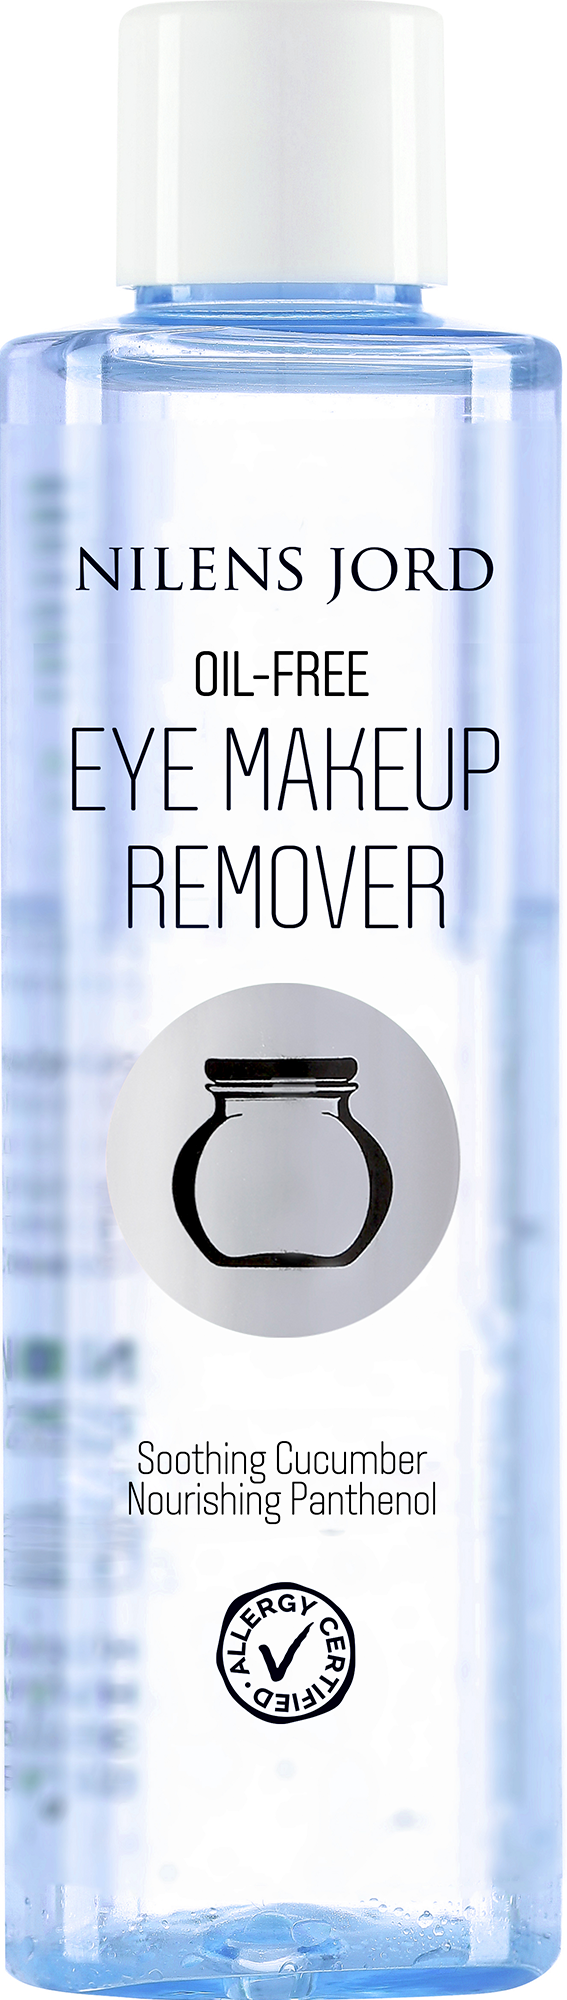 Nilens Jord Oil-Free Eye Makeup Remover 125 ml.